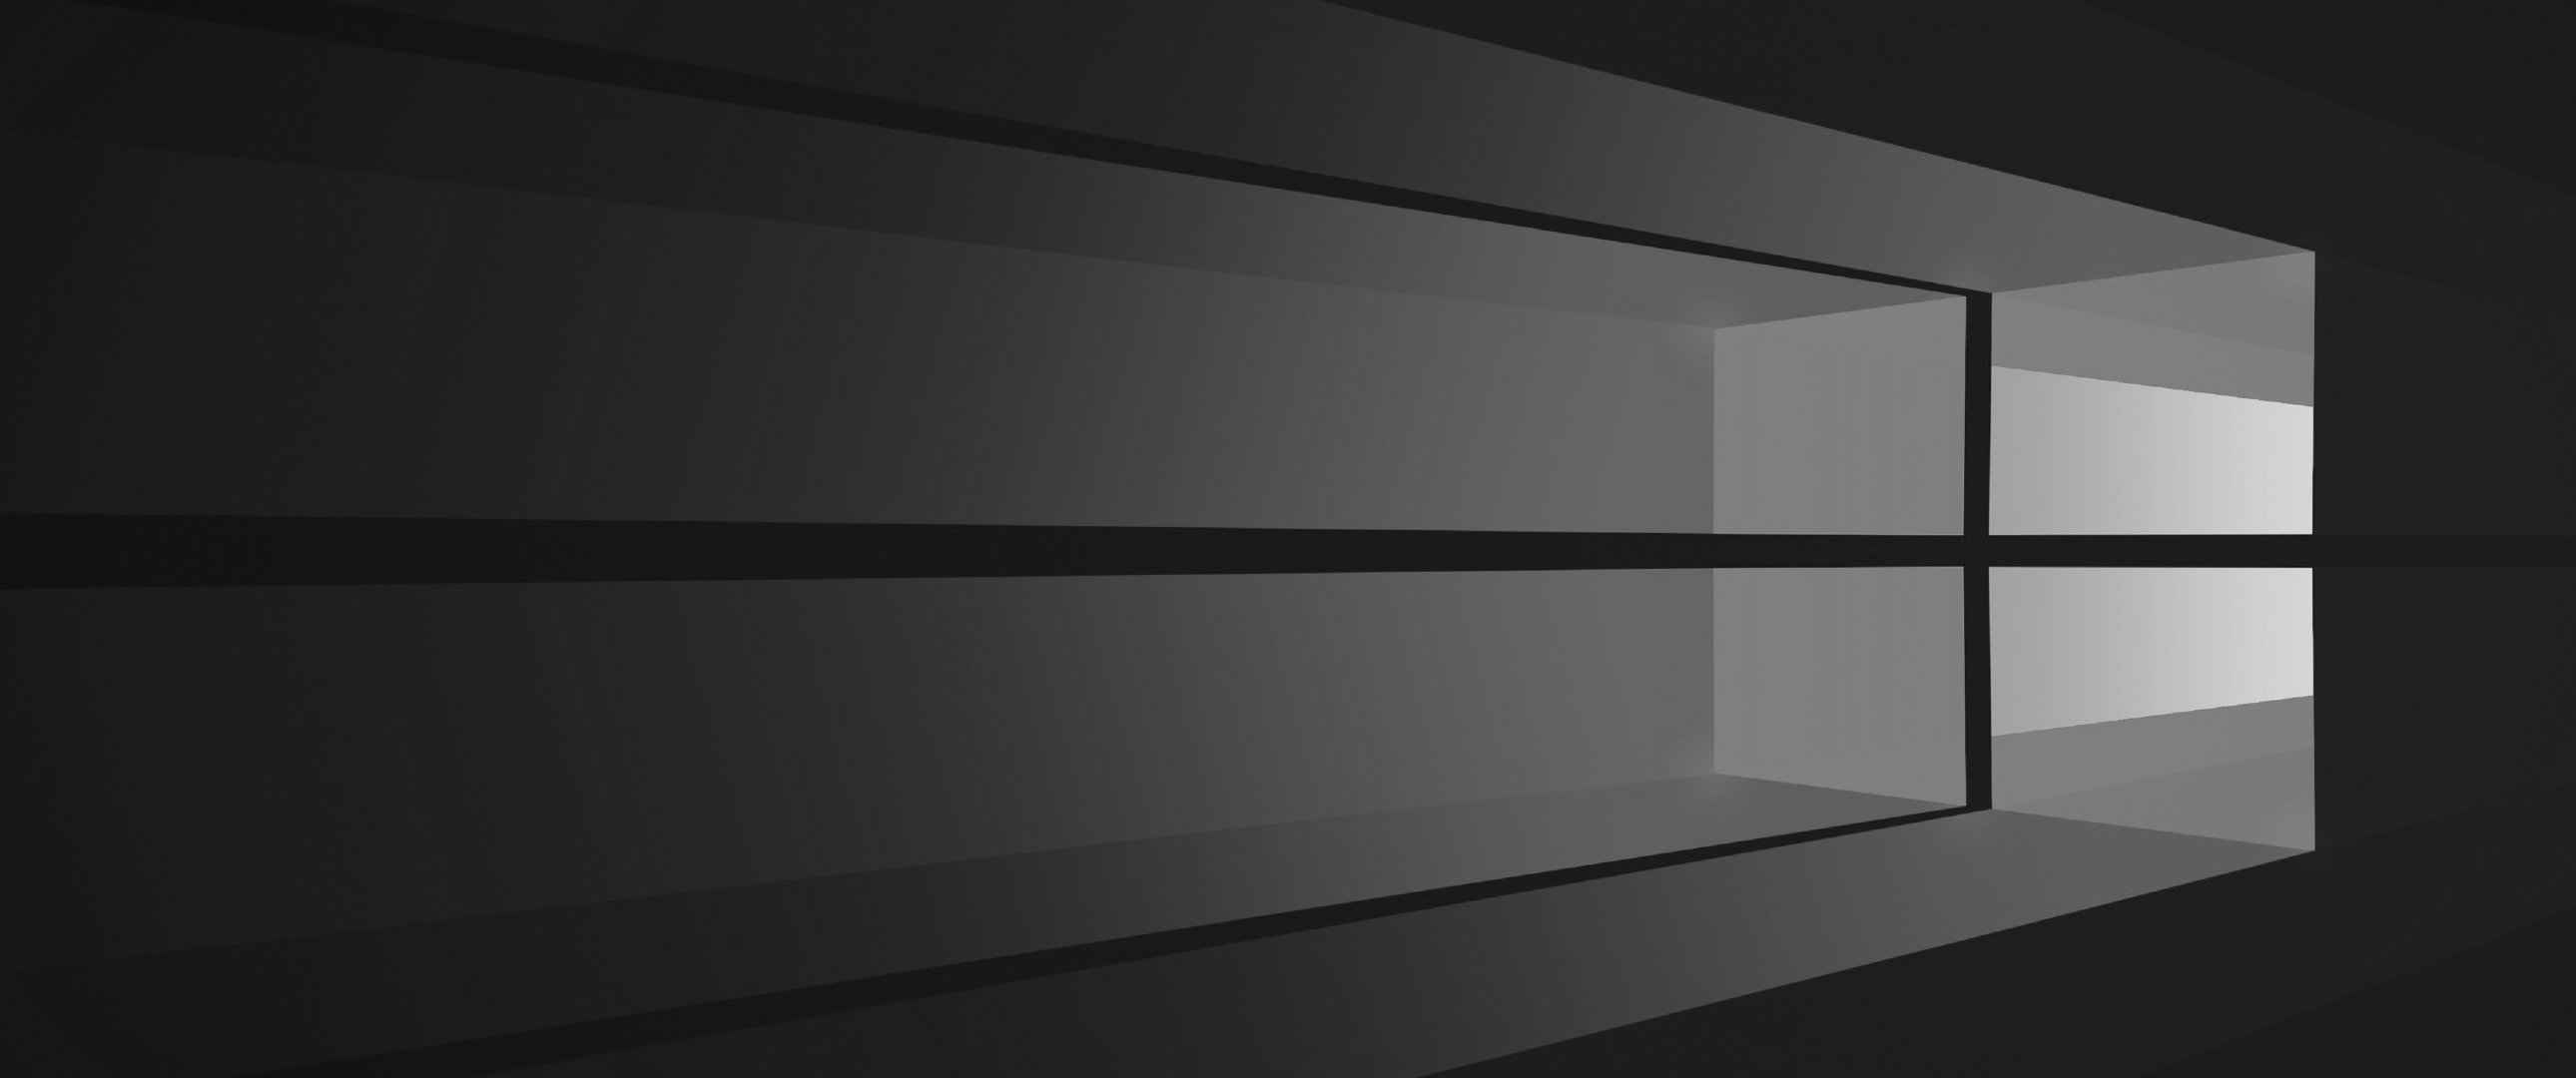 Windows 10黑色窗口壁纸